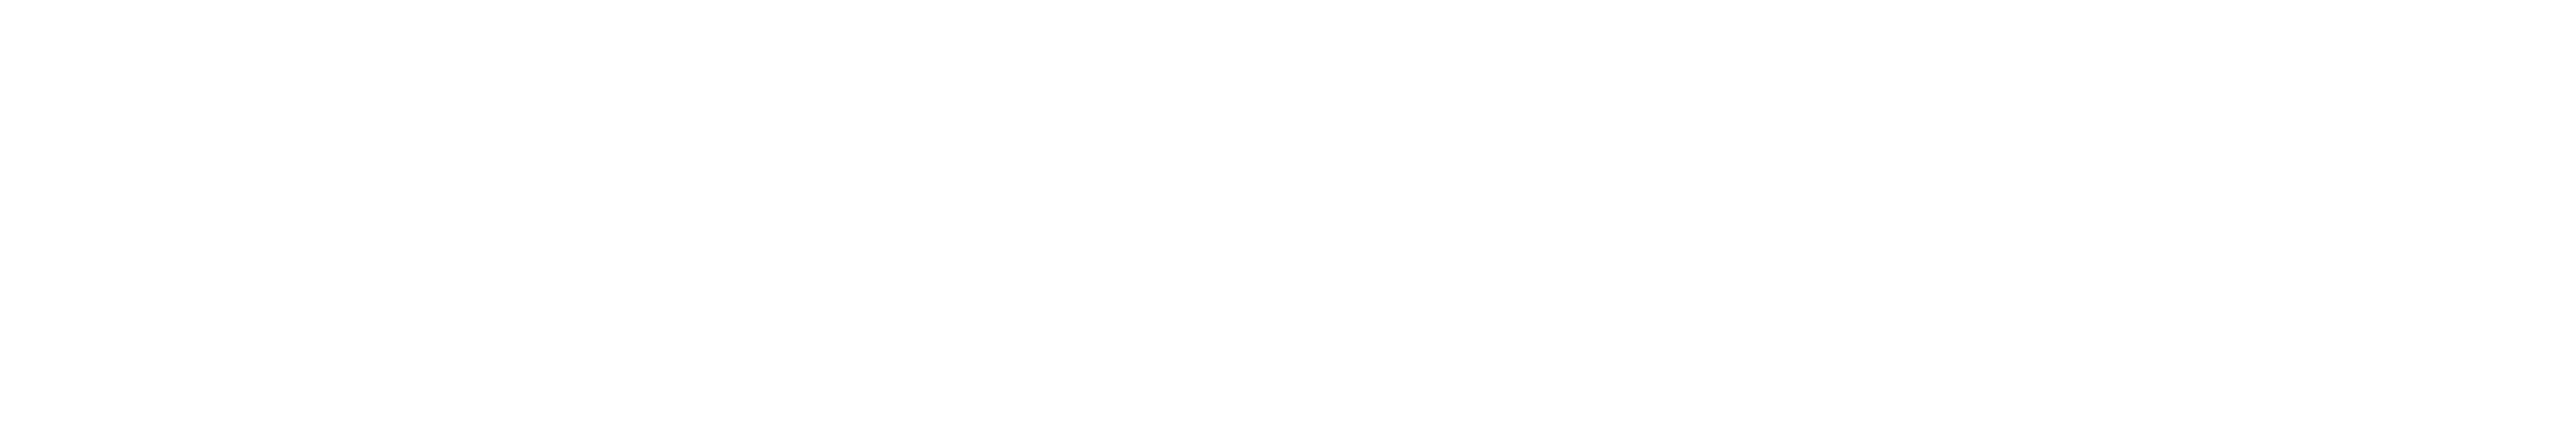 Calvin_Klein-Logo-PNG2